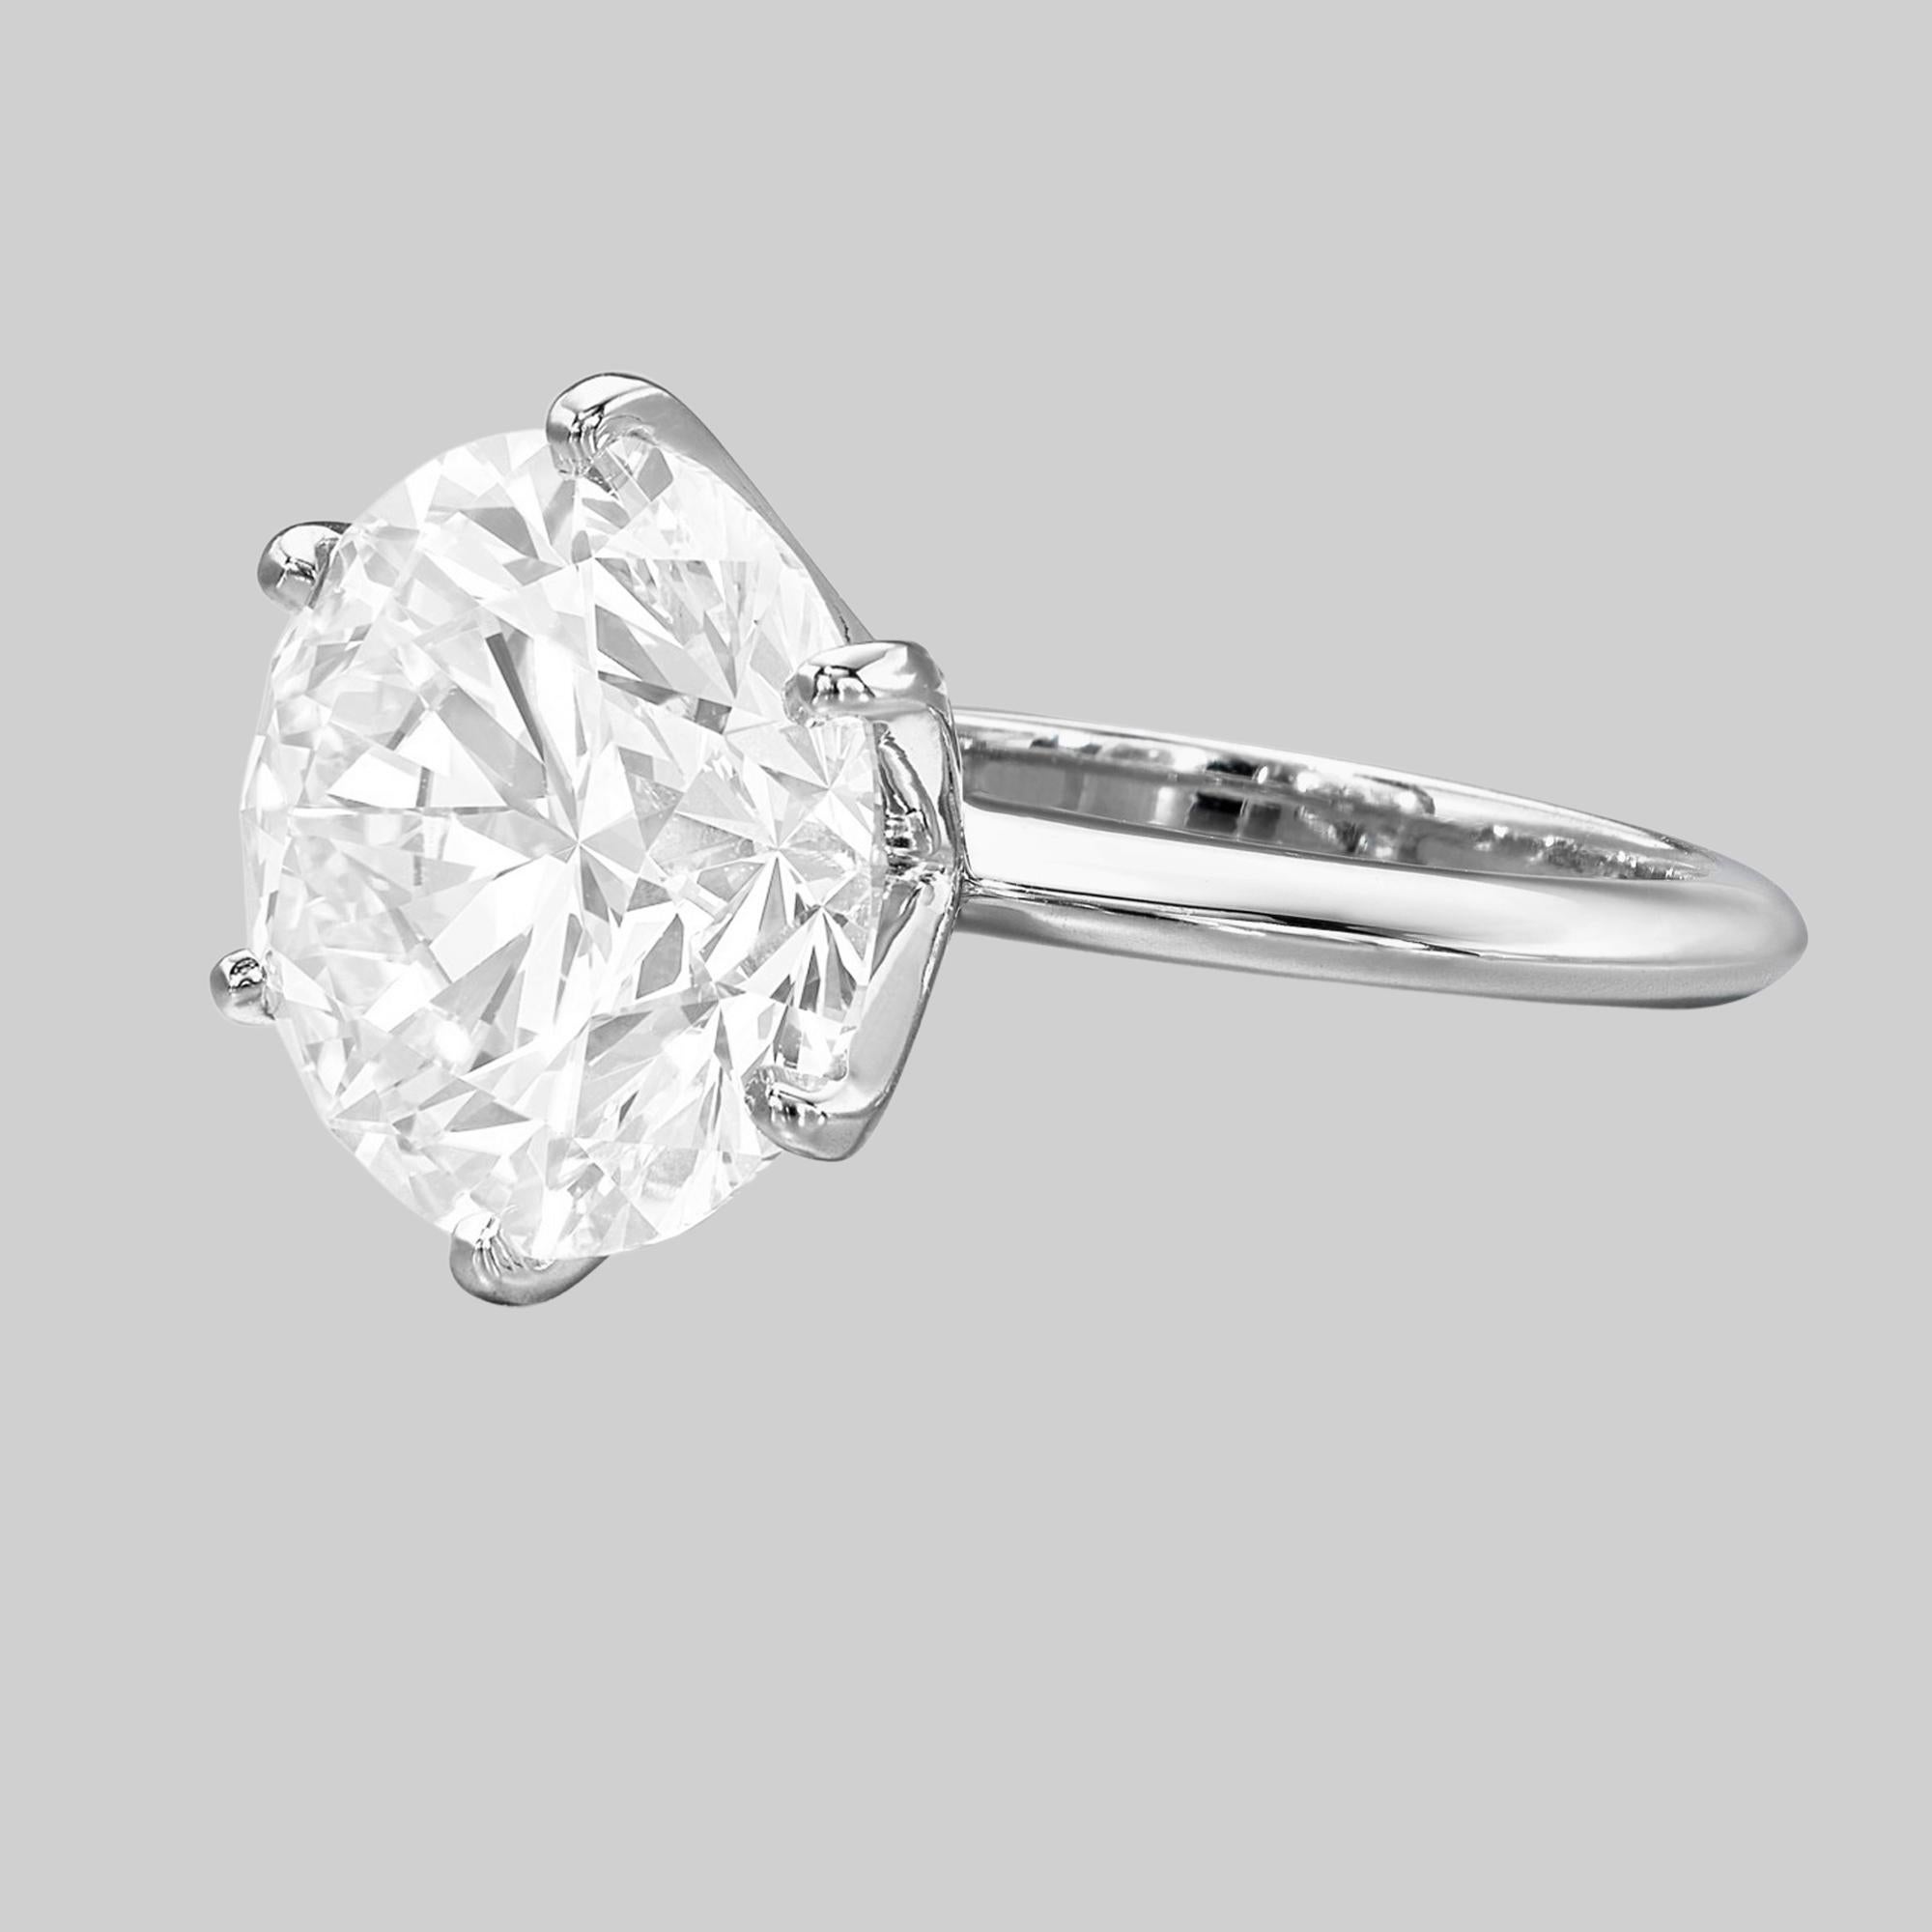 Tiffany & Co. 2.10 ct poids total Platinum Round Brilliant Cut Diamond Solitaire Engagement Ring. 

La bague pèse 5,7 grammes, taille 5,5 (convient à la plupart des tailles de doigt), la pierre centrale est un diamant rond naturel de taille